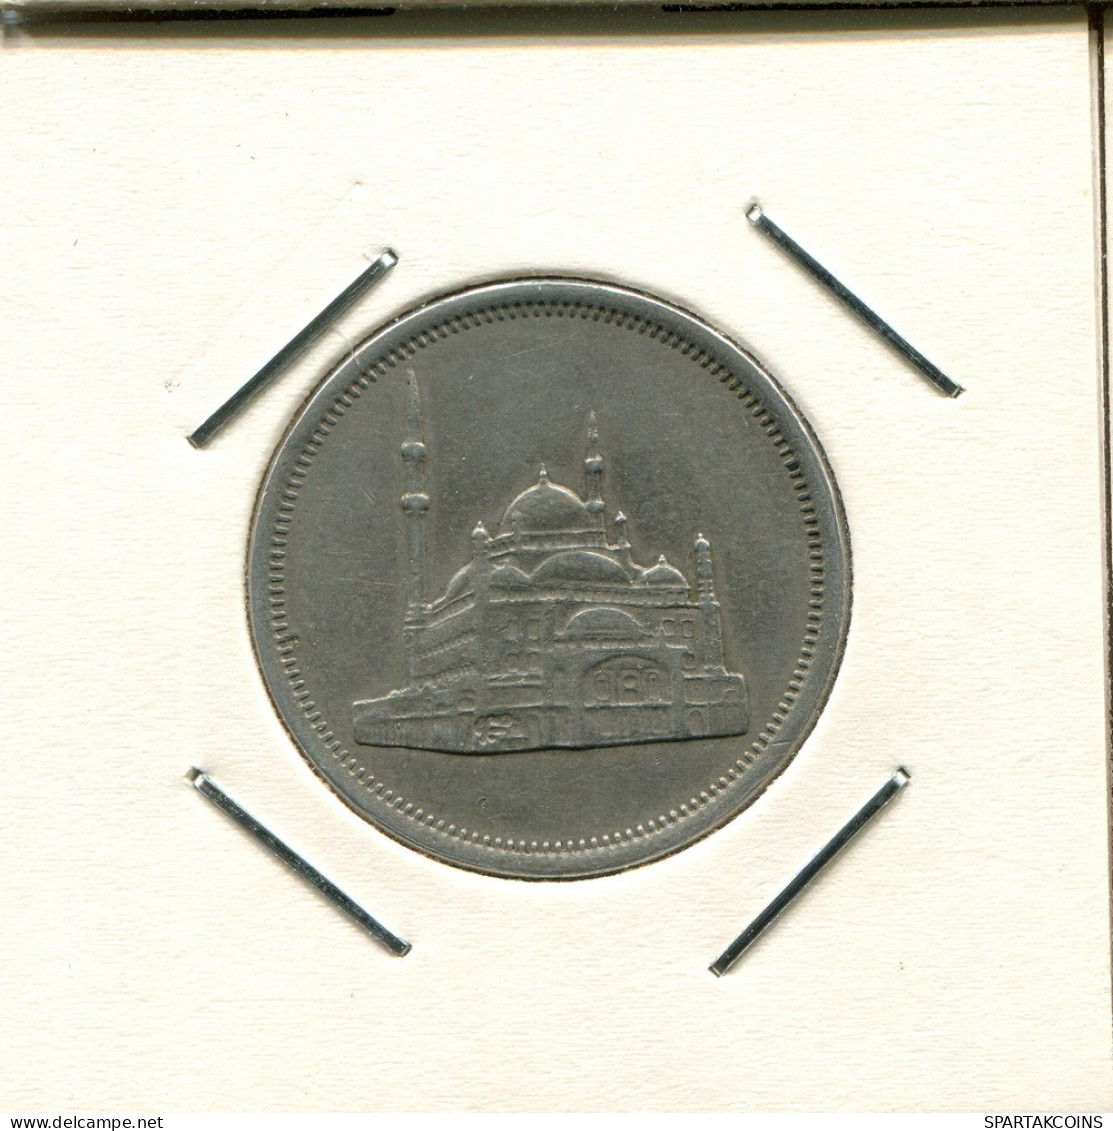 20 QIRSH 1984 EGYPT Islamic Coin #AS159.U.A - Egypt